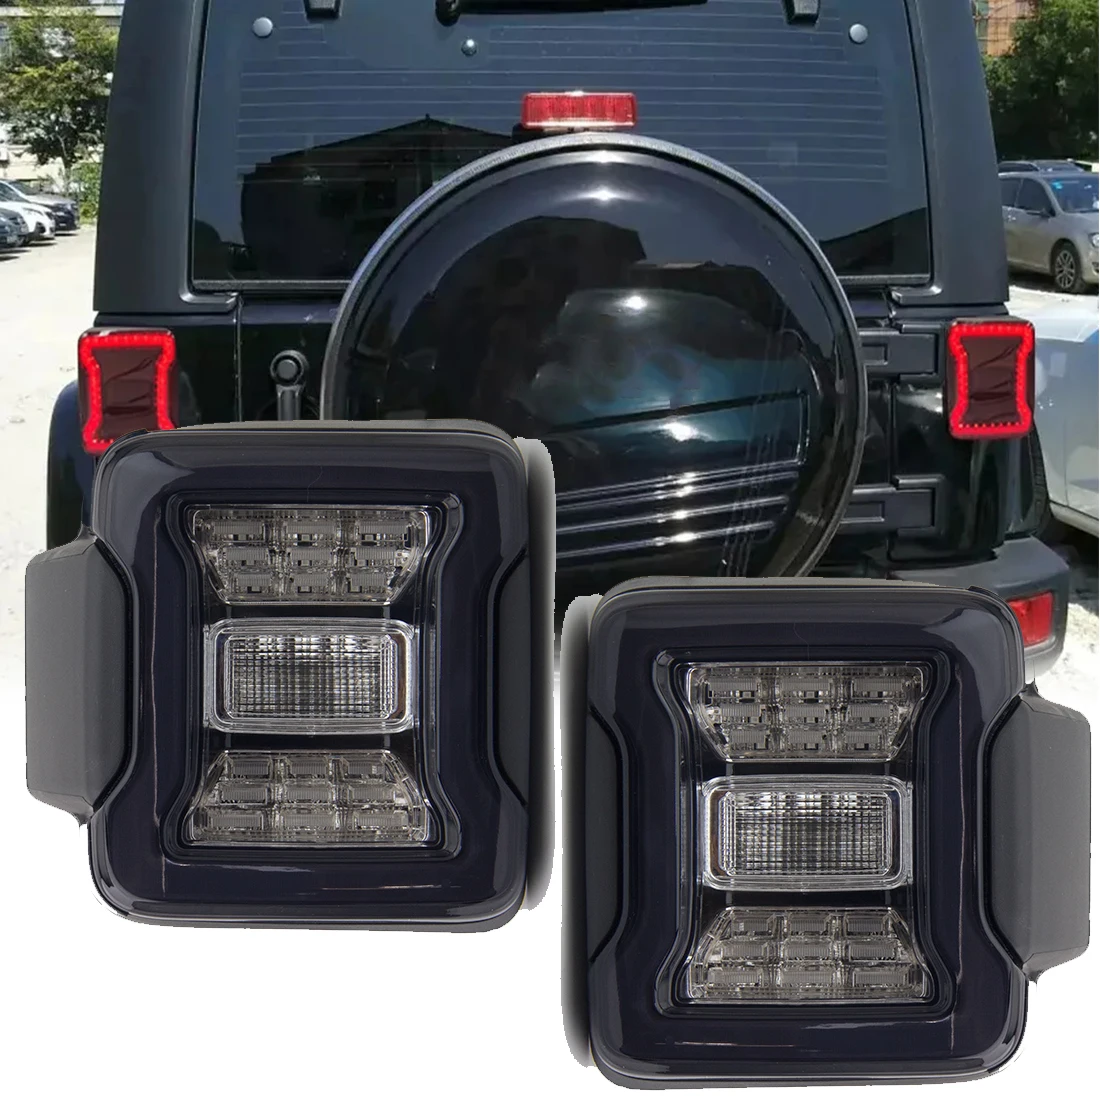 

Задний светодиодный фонарь для Jeep Wrangler JK 2007-2017 DRL, стоп-сигнал, сигнал поворота, дневные ходовые огни, задняя лампа в сборе, США, 1 пара